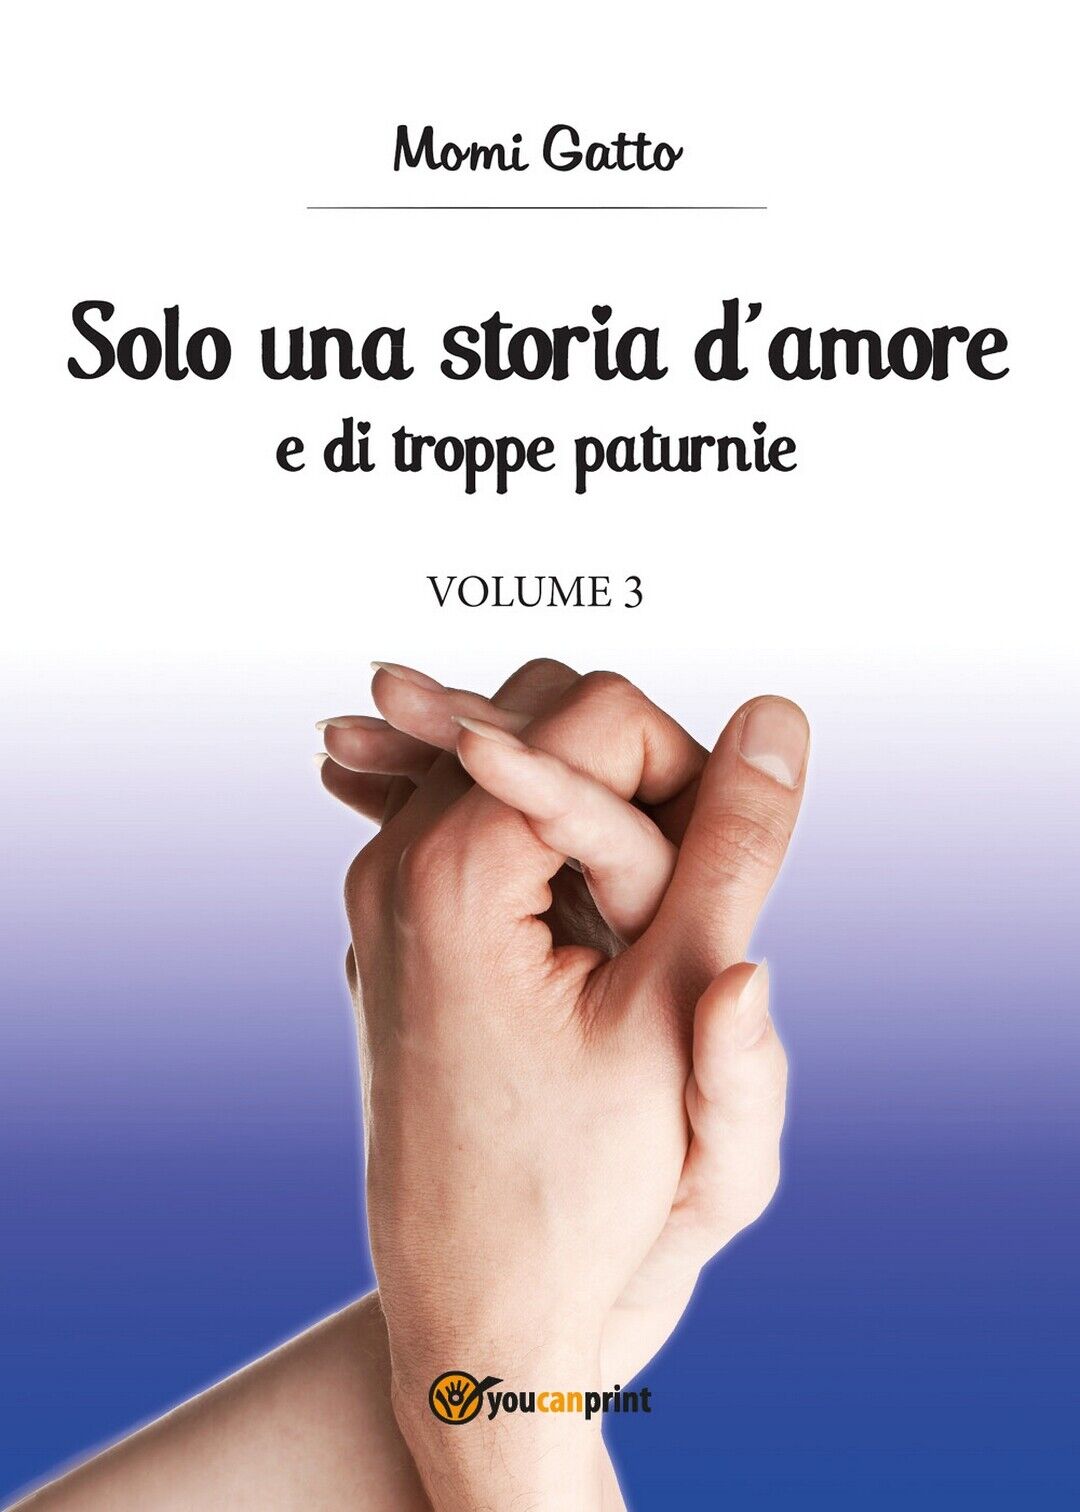 Solo una storia d'amore e di troppe paturnie - Volume 3 (Momi Gatto, 2017)